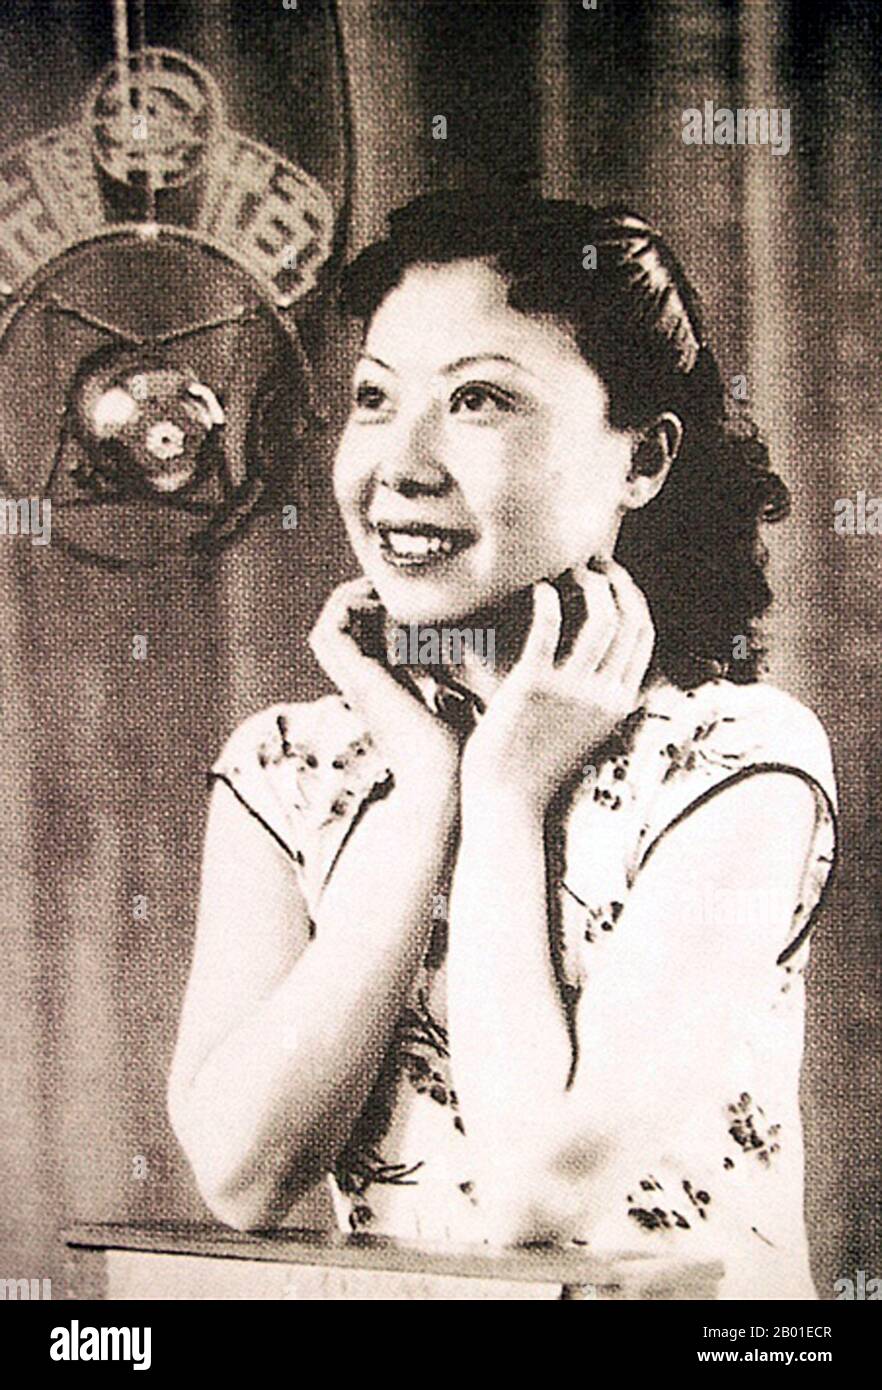 Cina: Bai Hong (24 febbraio 1920 - 28 maggio 1992), star del cinema e cantante, c. 1940s. Bai Hong è nato con il nome di nascita Bai Lizhu (白丽珠) a Pechino. Negli anni '1940s, divenne una delle "grandi stelle cantanti" cinesi in giovane età, Bai si unì alla Bright Moonlight Song and Dance Troupe, dove entrò nel settore dell'intrattenimento di Shanghai. Ha usato il nome di scena (白虹), che traduce come "Arcobaleno bianco". Negli anni '1930s, era un'icona popolare, conosciuta per la sua padronanza della lingua e della chiarezza nell'espressione dei testi, che la aiutava a guadagnare molti fan. Foto Stock